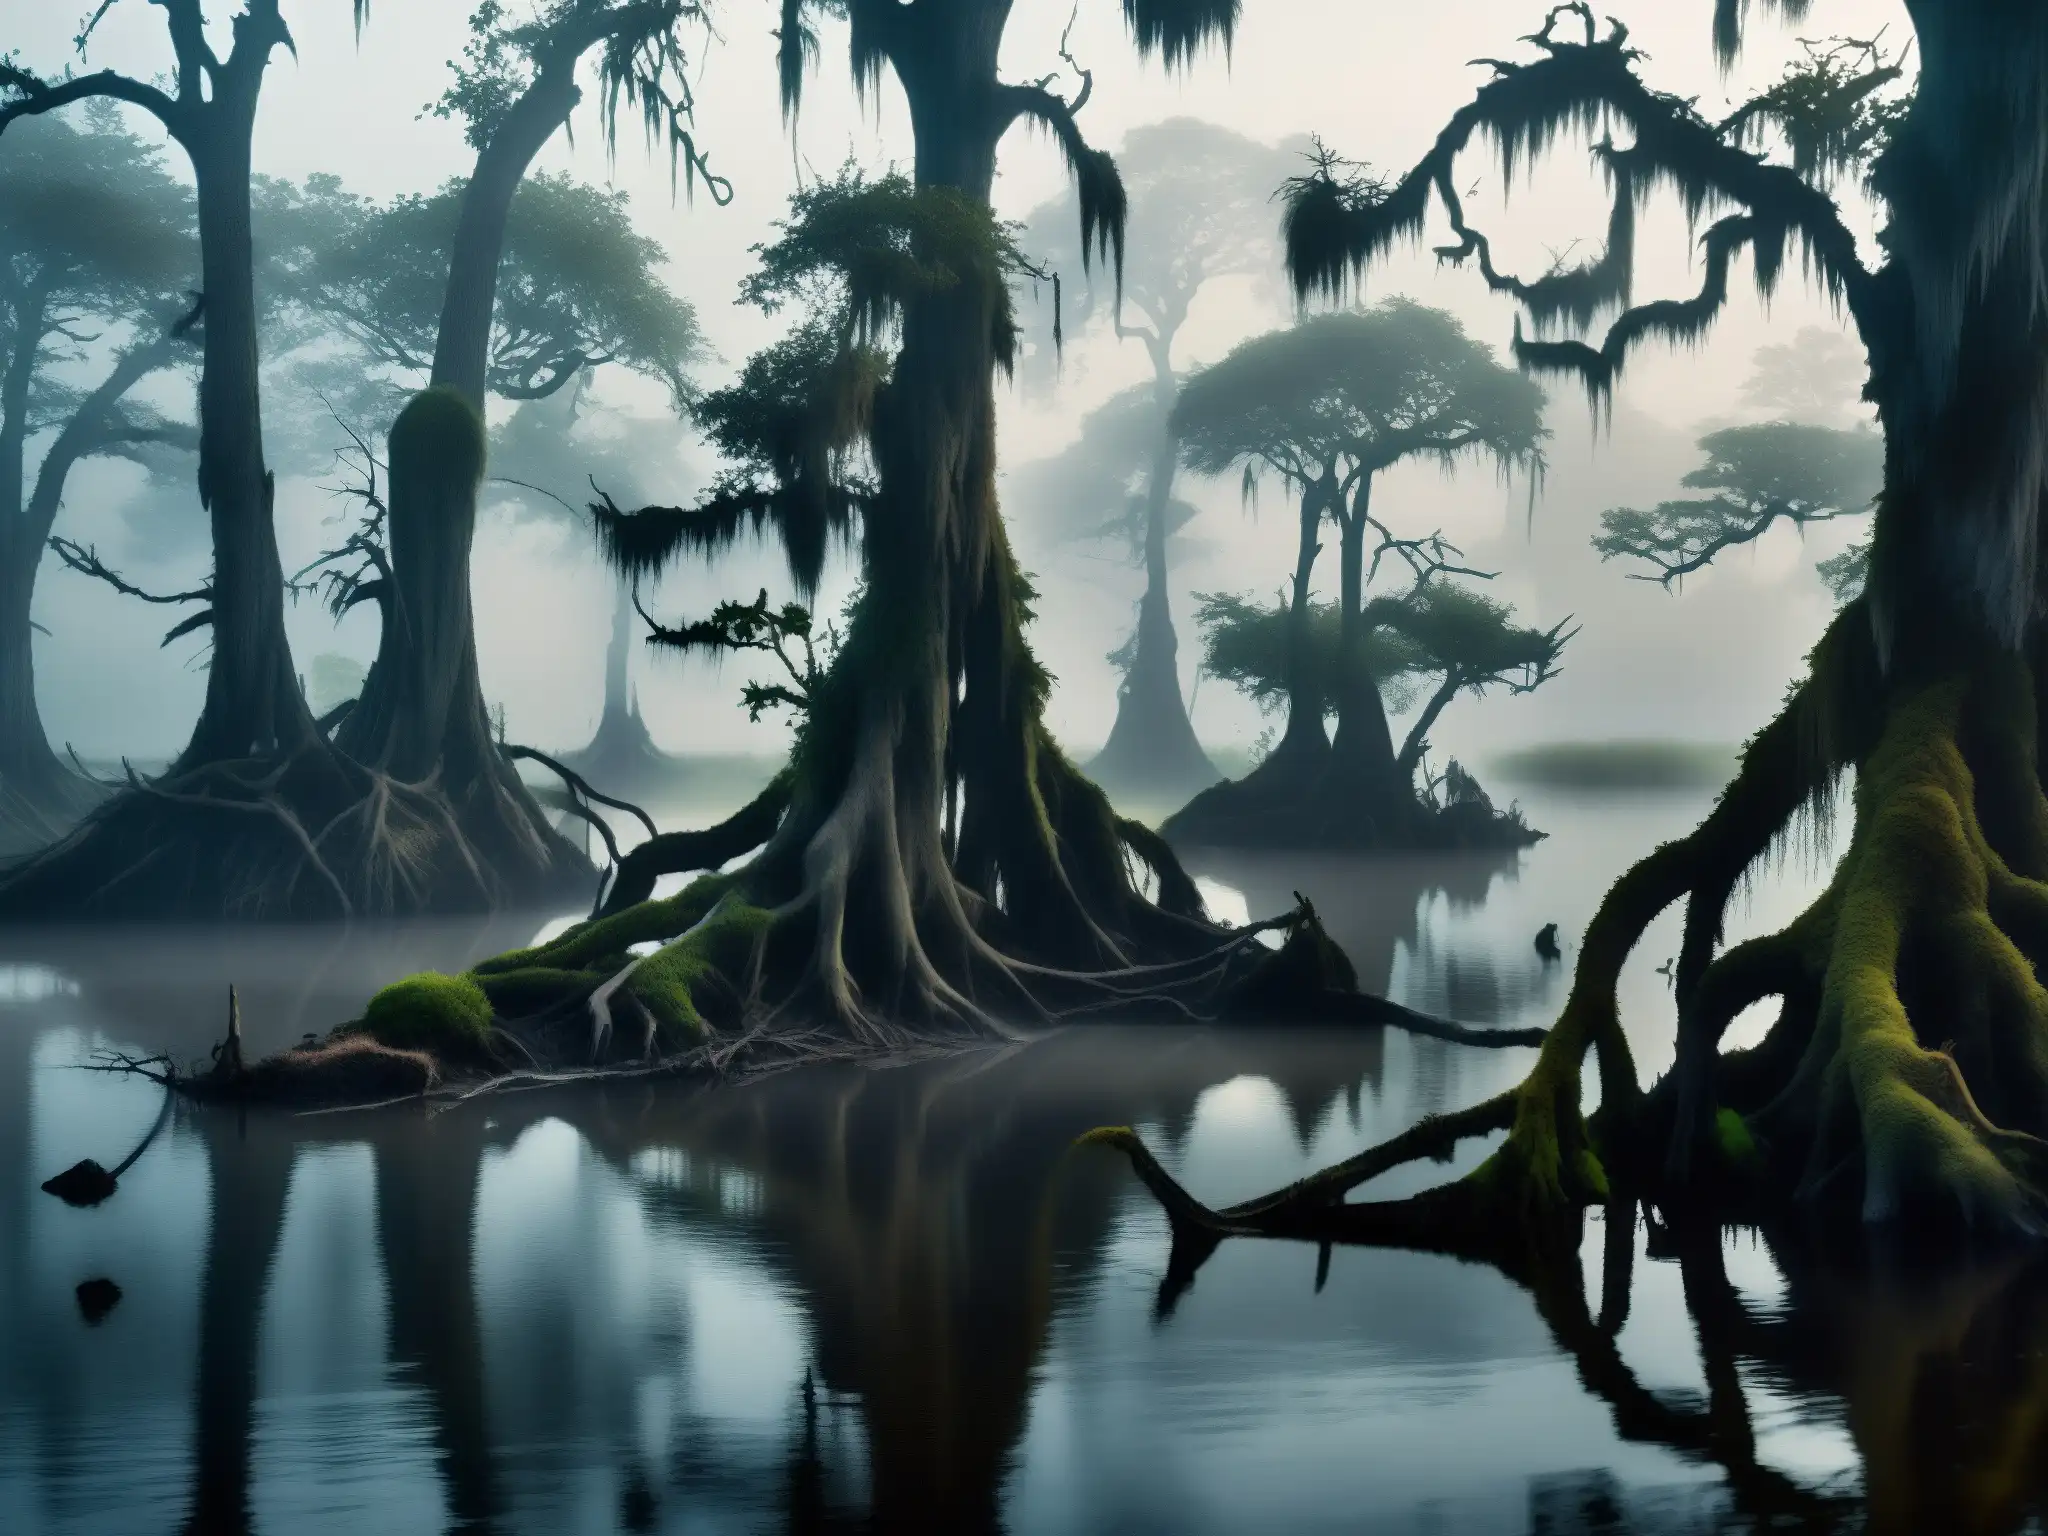 Un pantano misterioso y sombrío con árboles retorcidos emergiendo del agua, envuelto en neblina